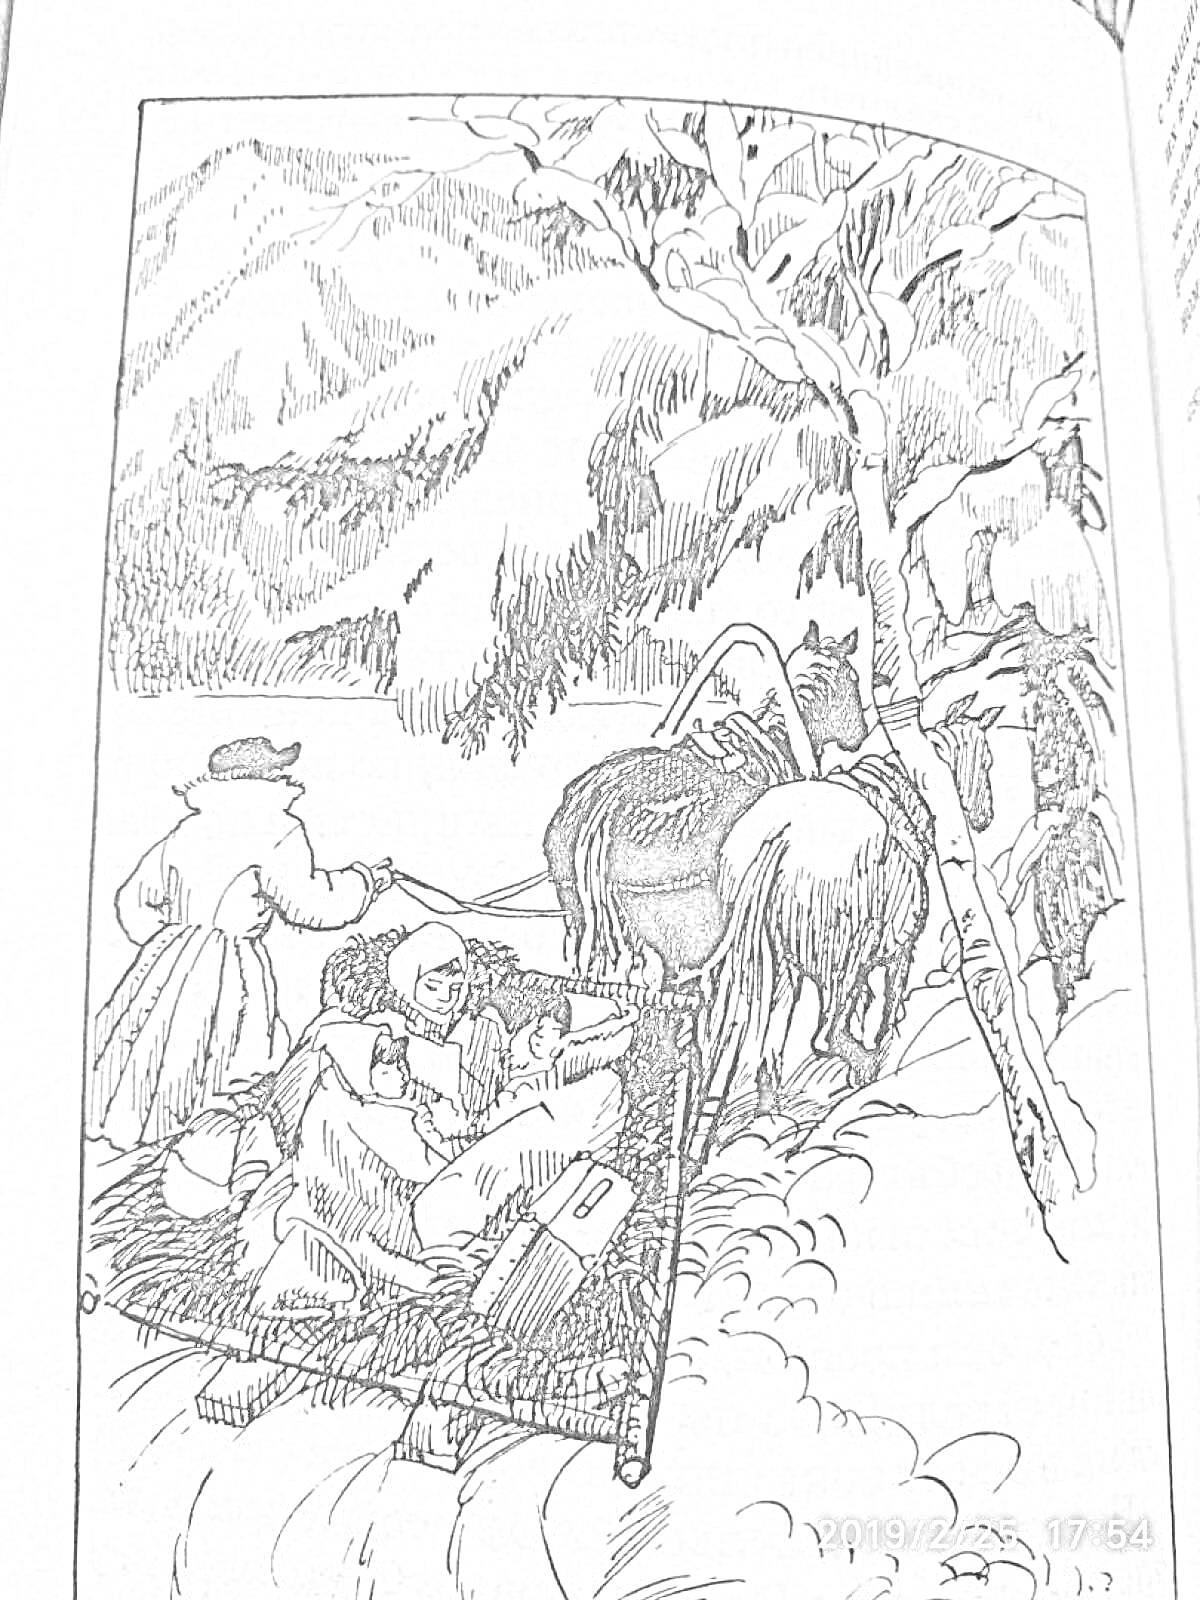 РаскраскаЧук и Гек в снегах на санях, запряженных лошадью, с сопровождающим человеком